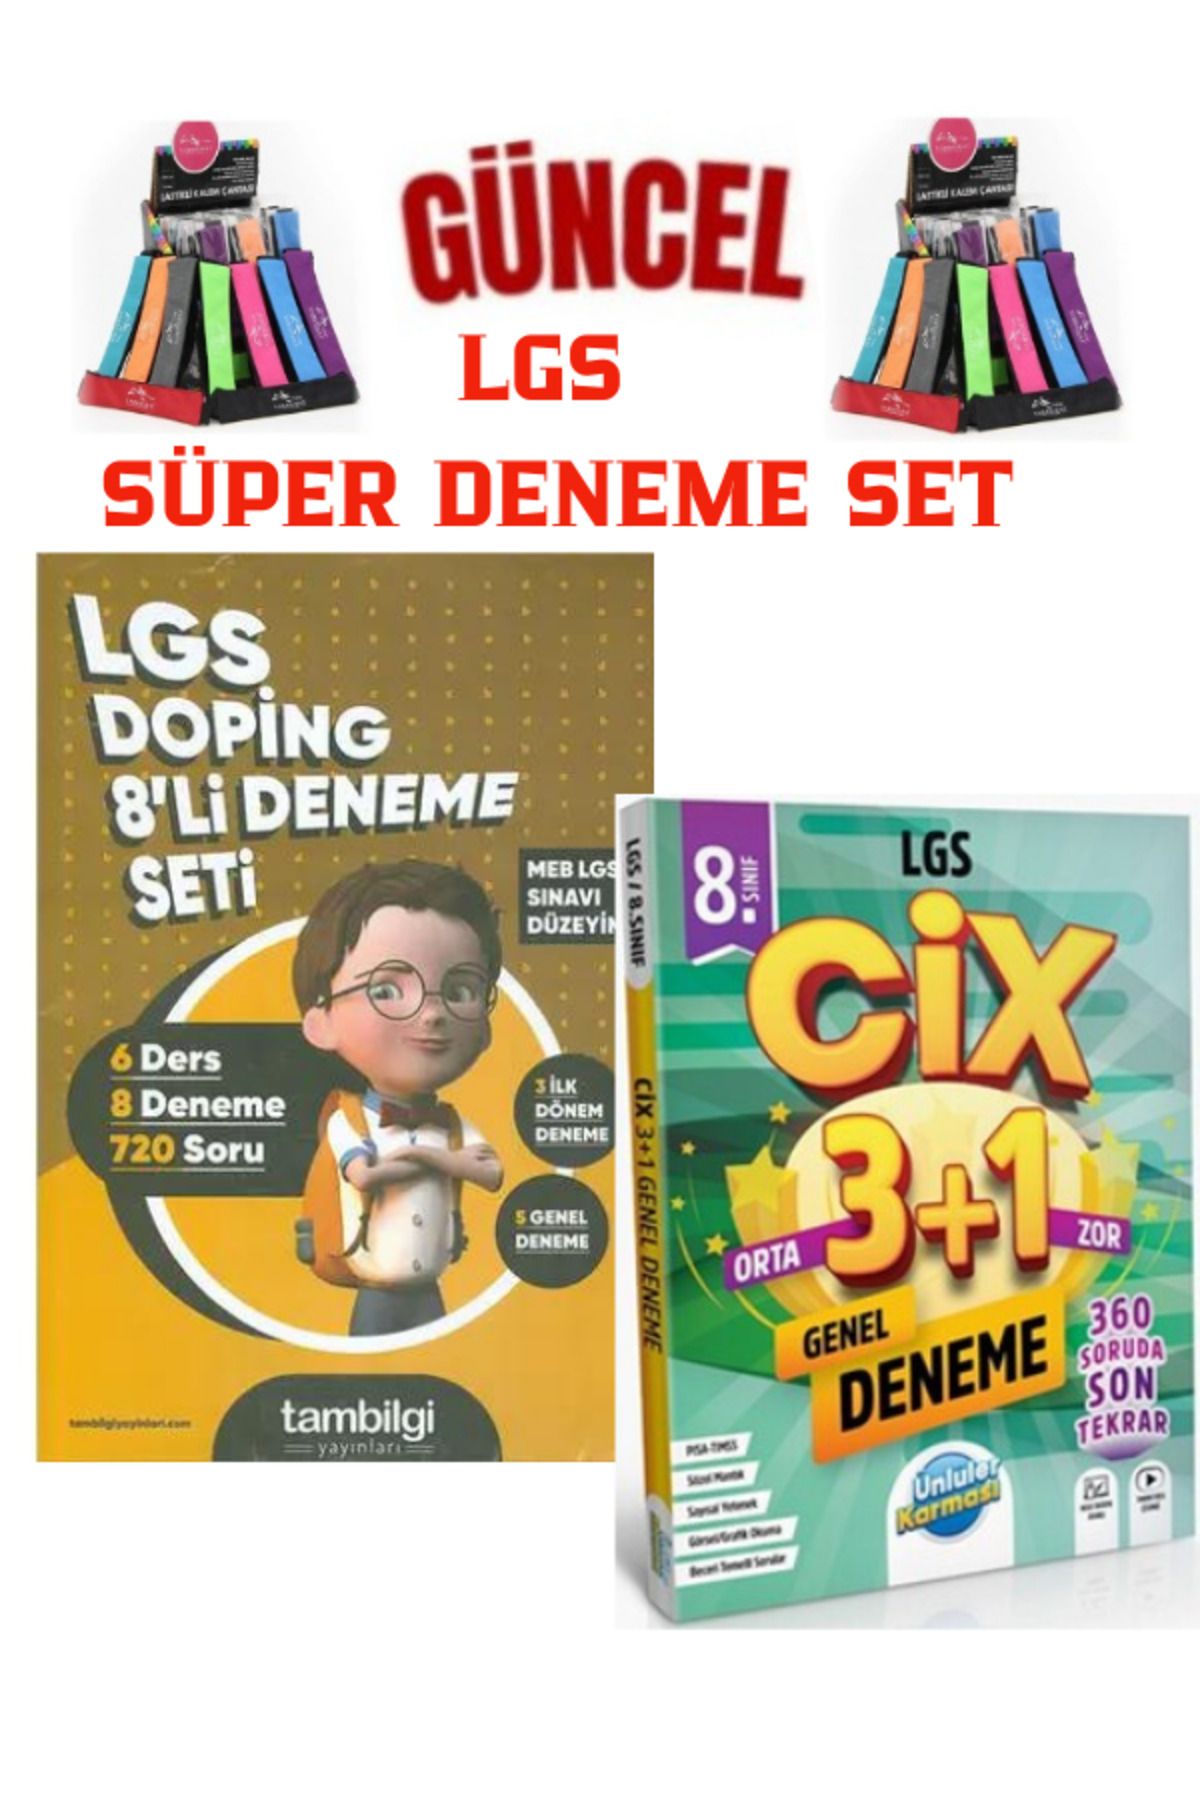 Bilgi Yayınları TamBilgi Yayınları Doping 8 li Deneme(720Soru)+Ünlüler LGS CİX 3+1 Genel Deneme+Kalemlik